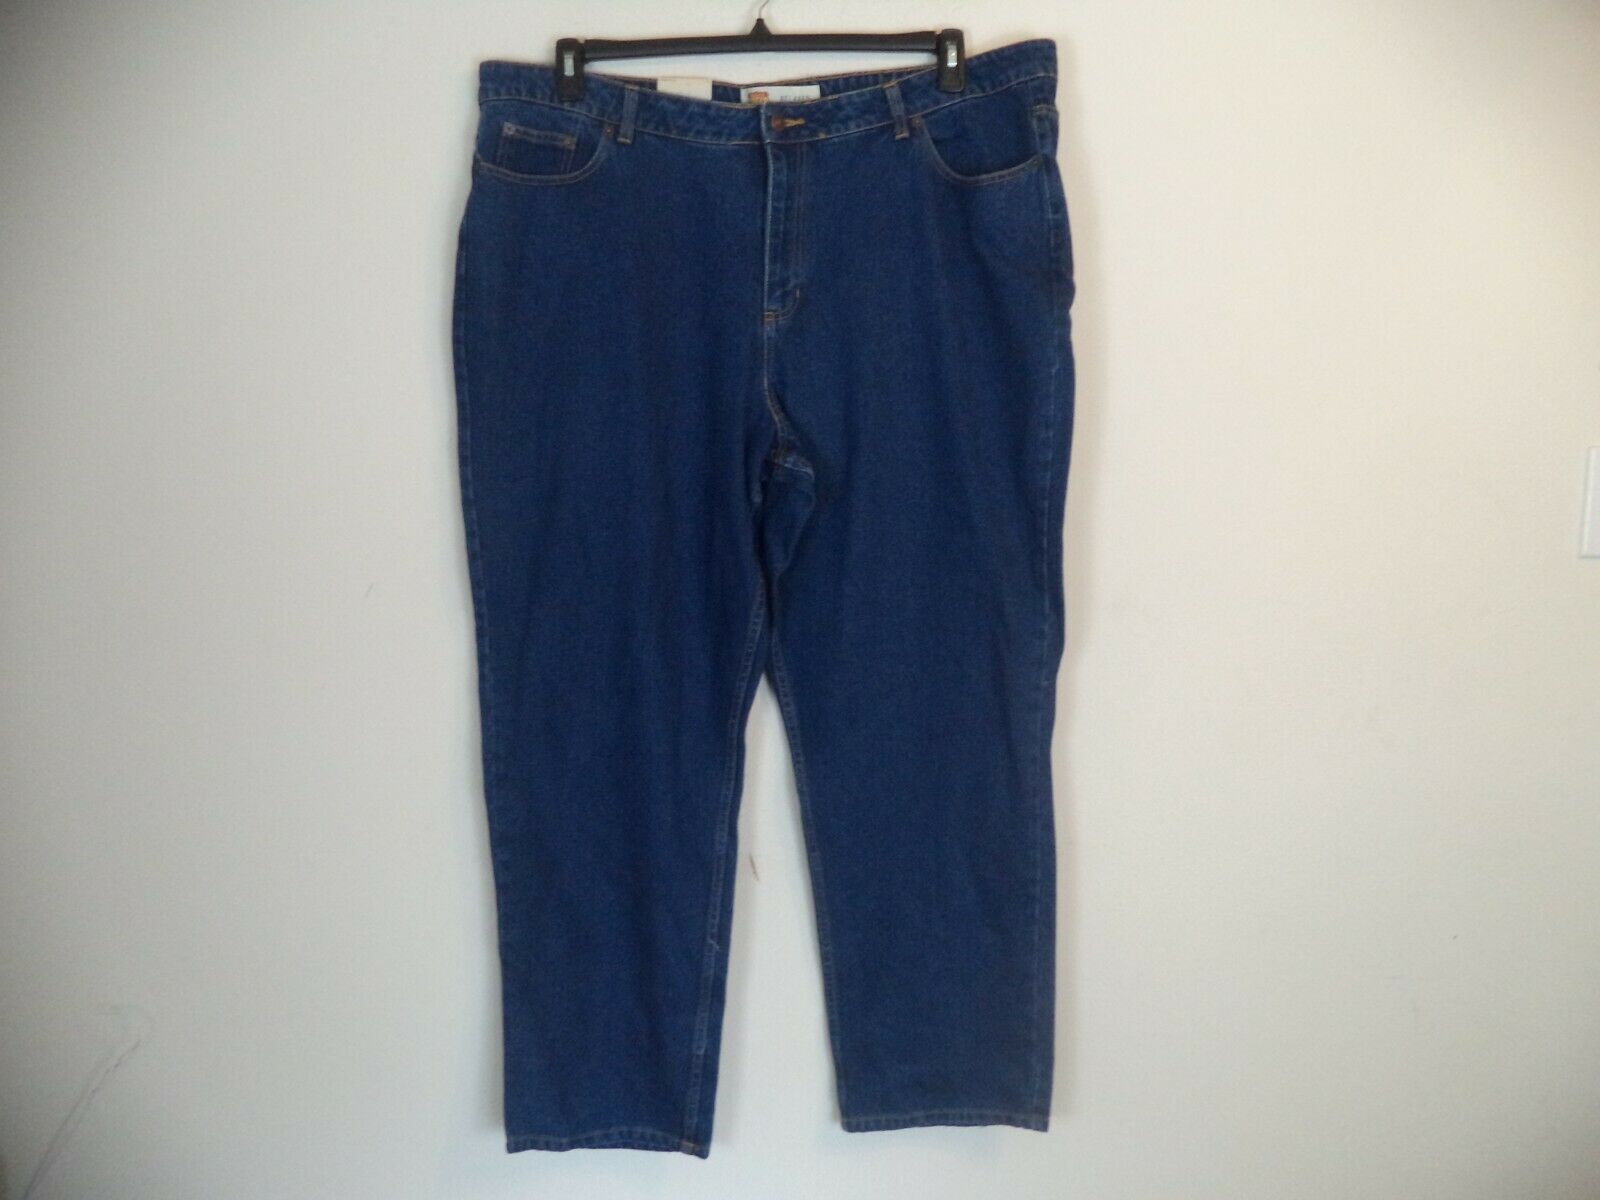 Women's blue Route 66 relaxed jeans pants. 24l. 100% cotton.